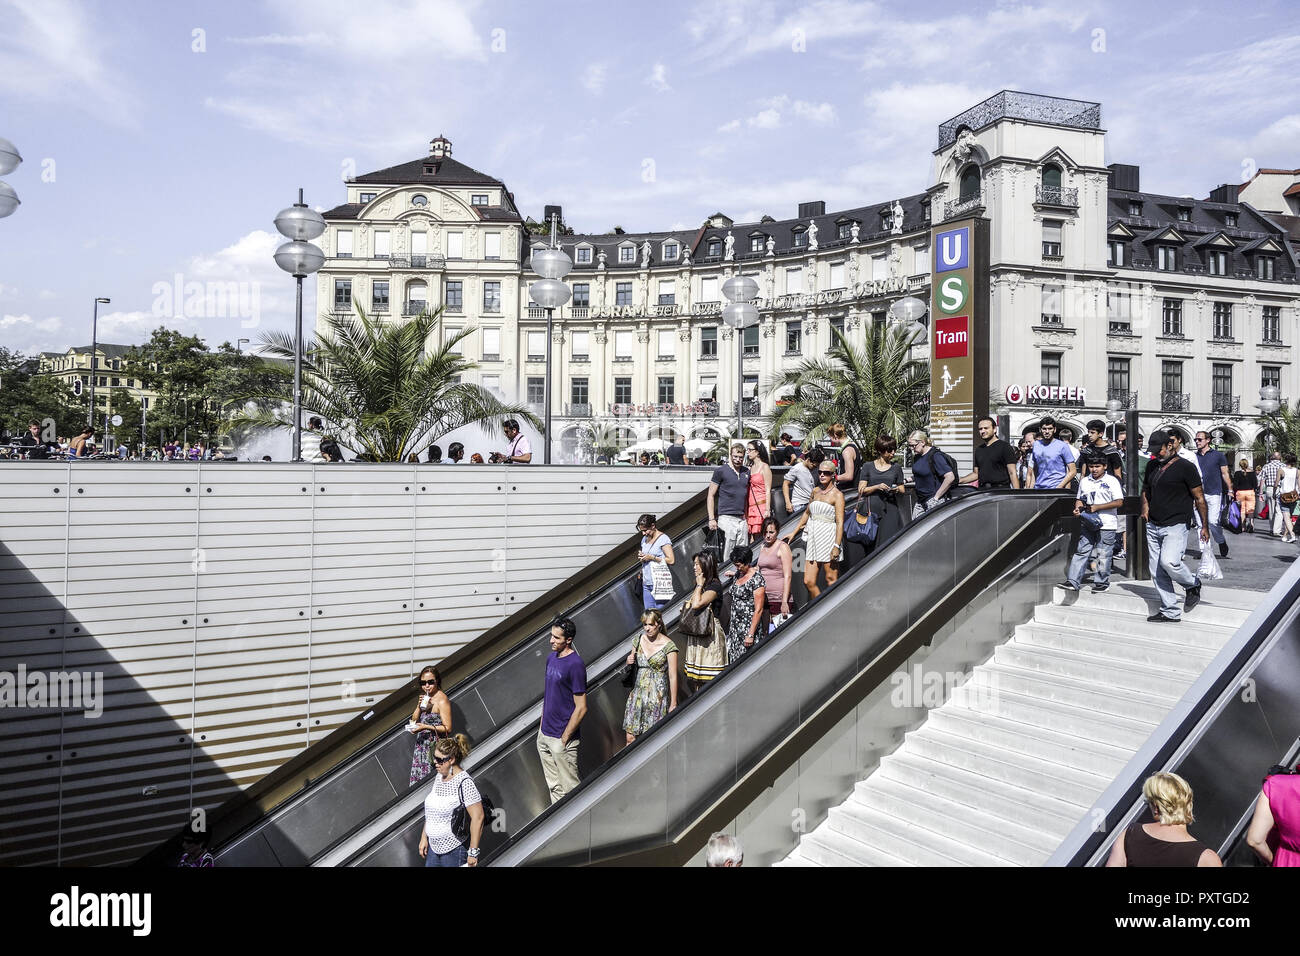 Rolltreppe mit Passanten am Karlsplatz, Stachus, in München, Bayern Deutschland..(nur redaktionell nutzbar, kein model release vorhanden) Stock Photo